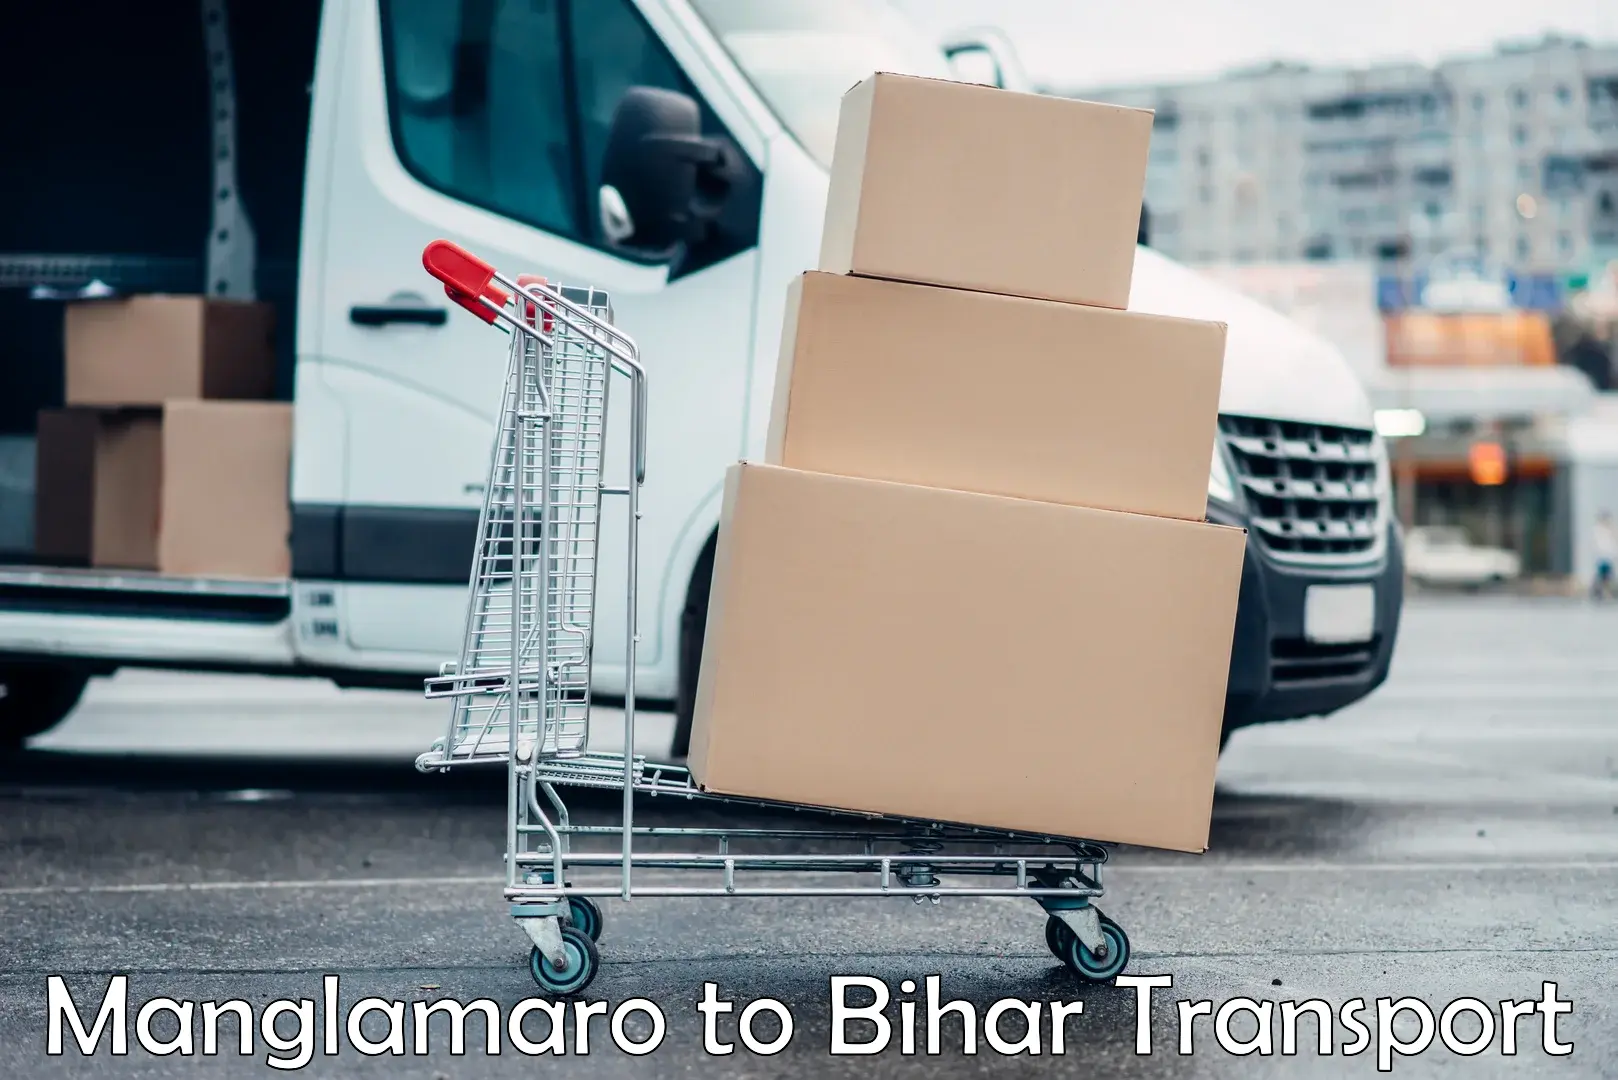 Cargo train transport services Manglamaro to Dighwara